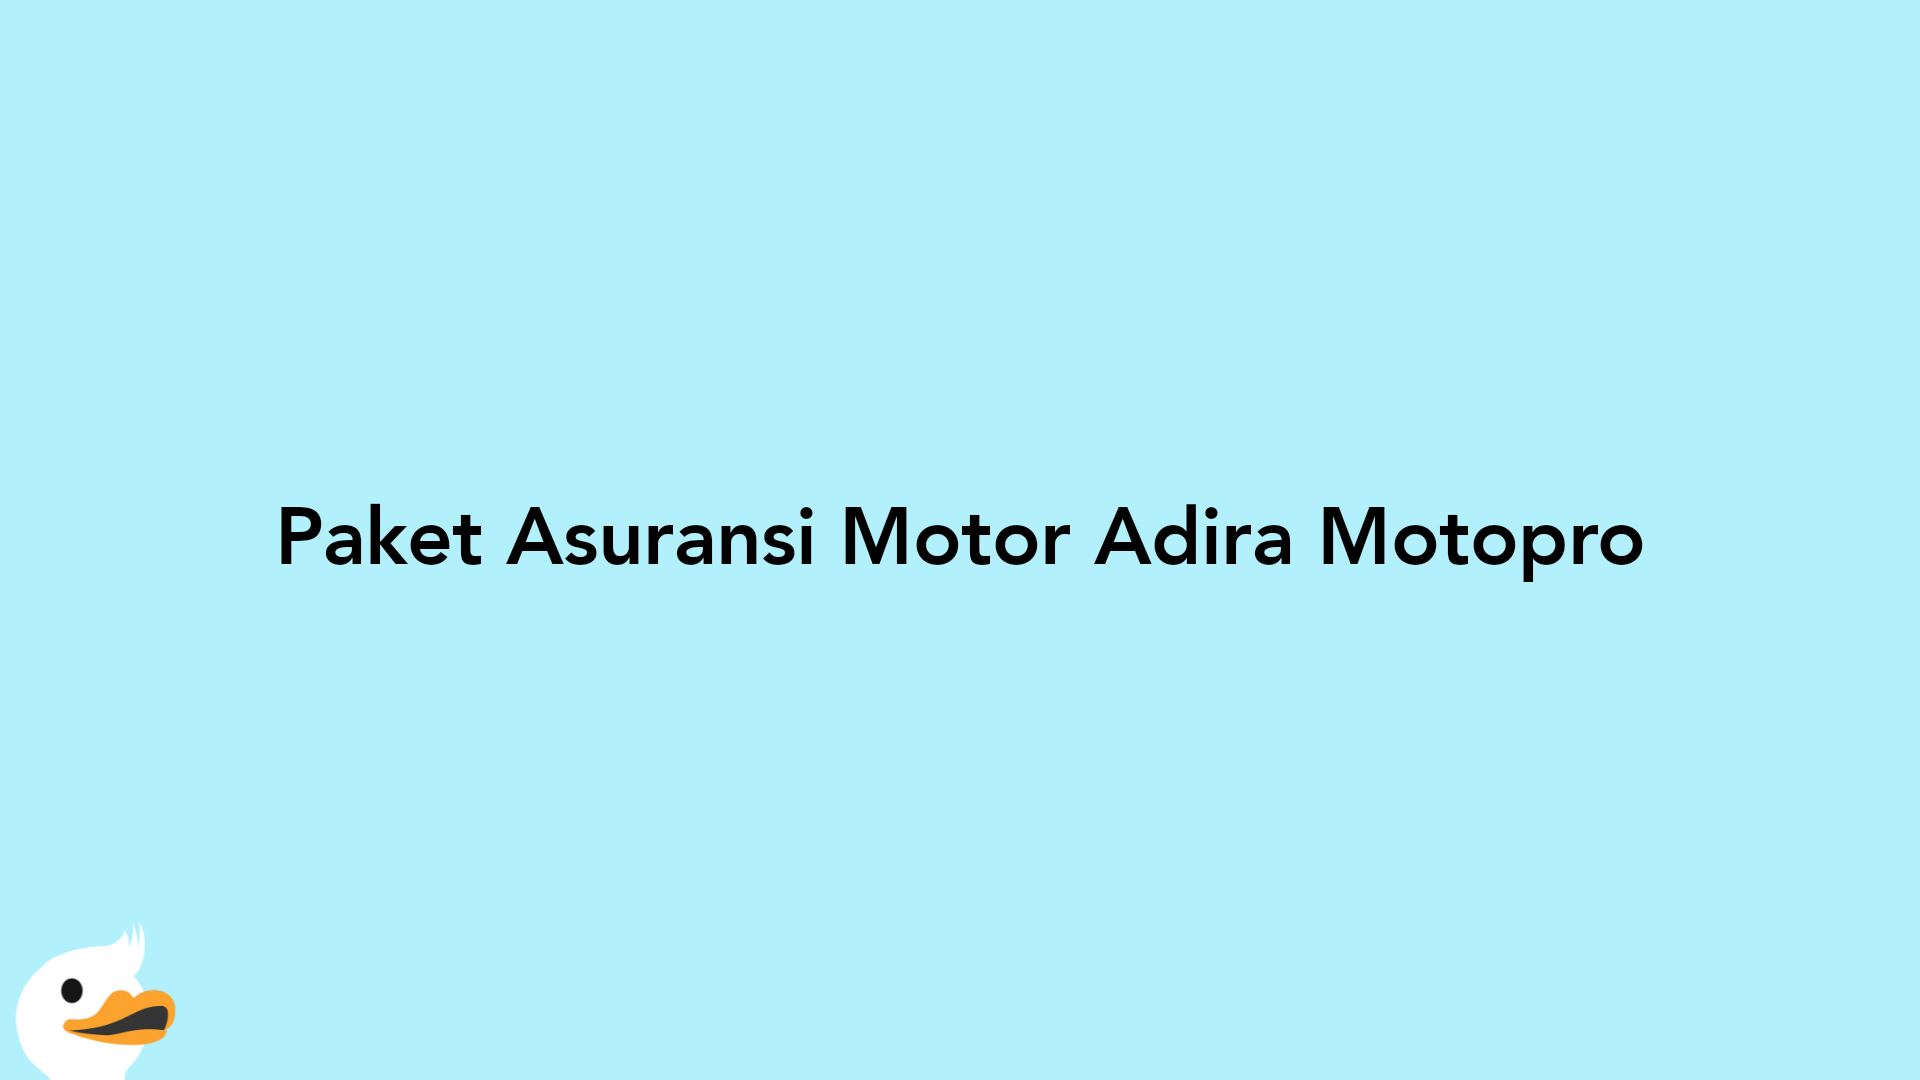 Paket Asuransi Motor Adira Motopro